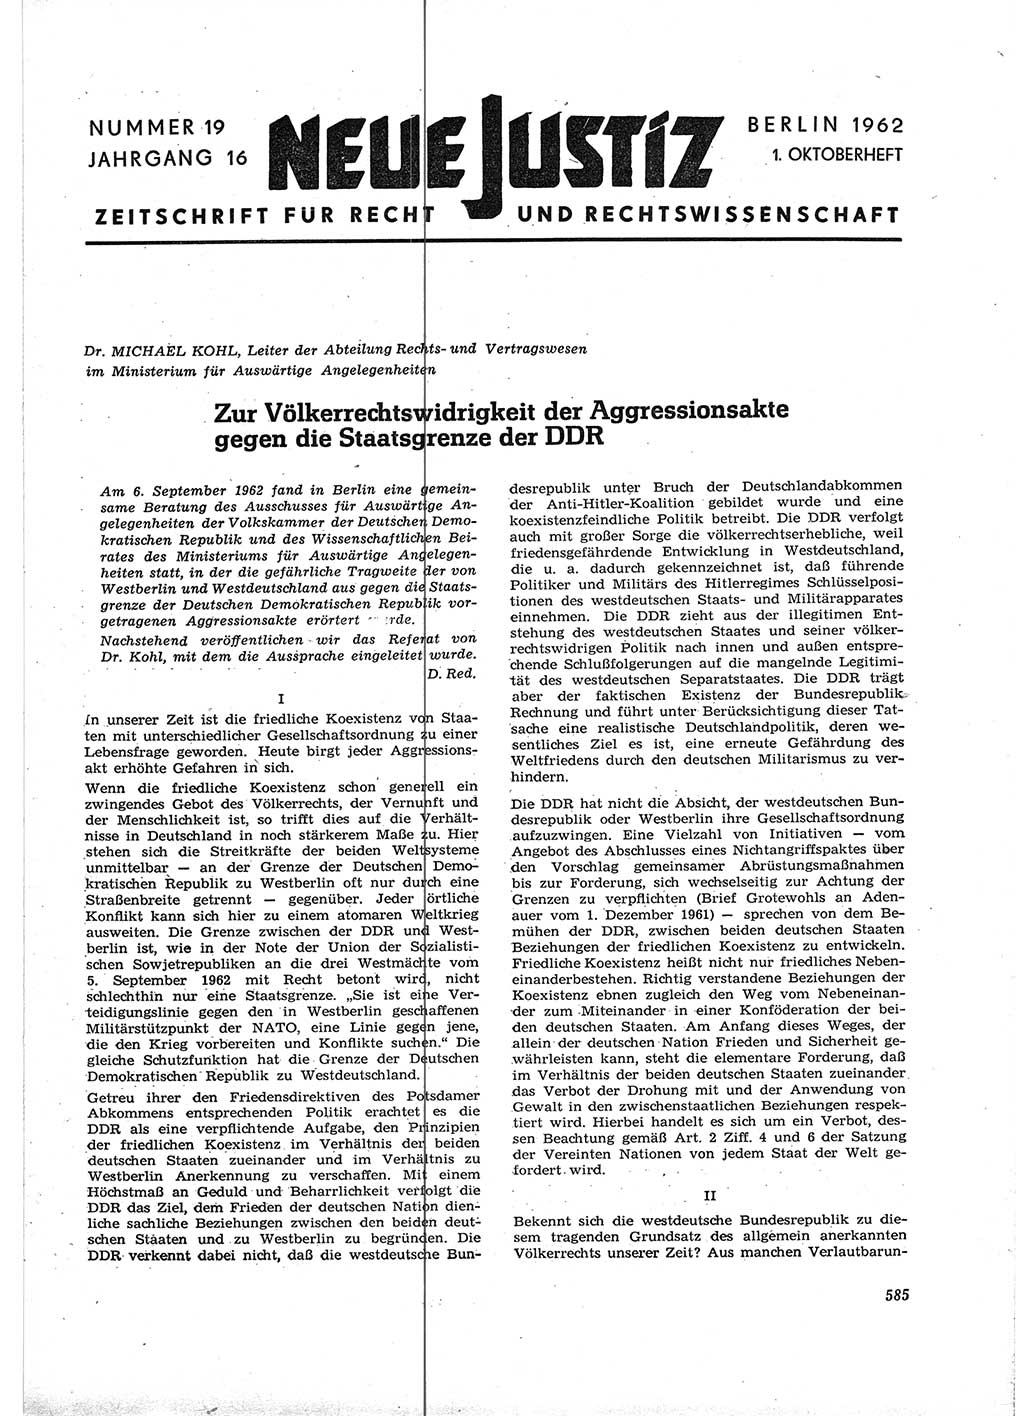 Neue Justiz (NJ), Zeitschrift für Recht und Rechtswissenschaft [Deutsche Demokratische Republik (DDR)], 16. Jahrgang 1962, Seite 585 (NJ DDR 1962, S. 585)